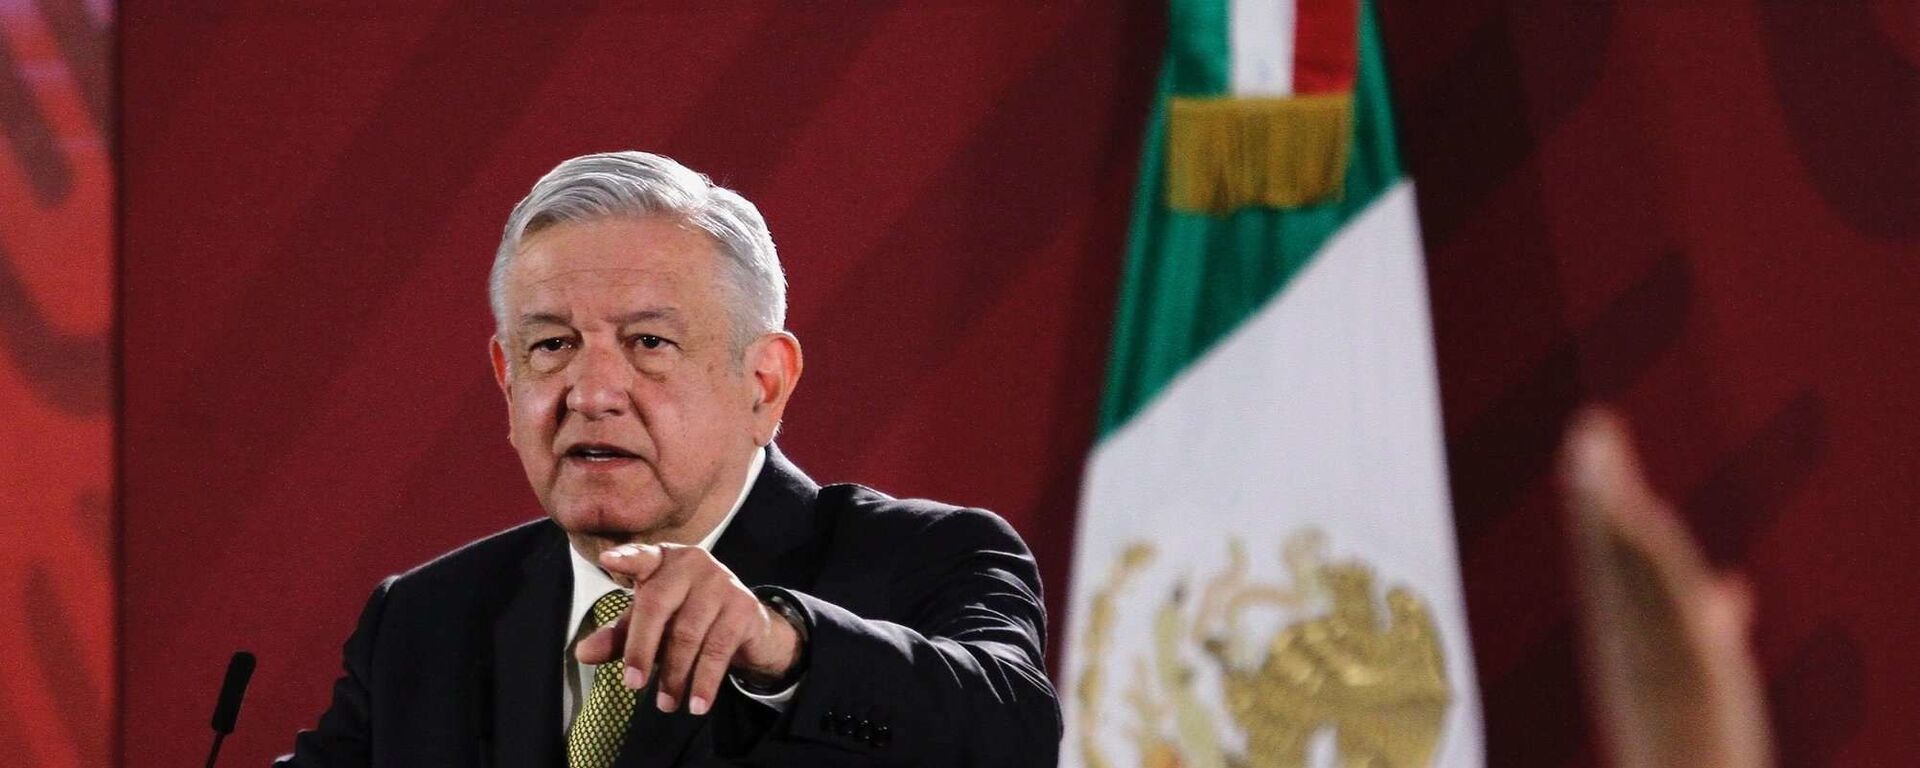 Andrés Manuel López Obrador, presidente de México - Sputnik Mundo, 1920, 07.10.2021